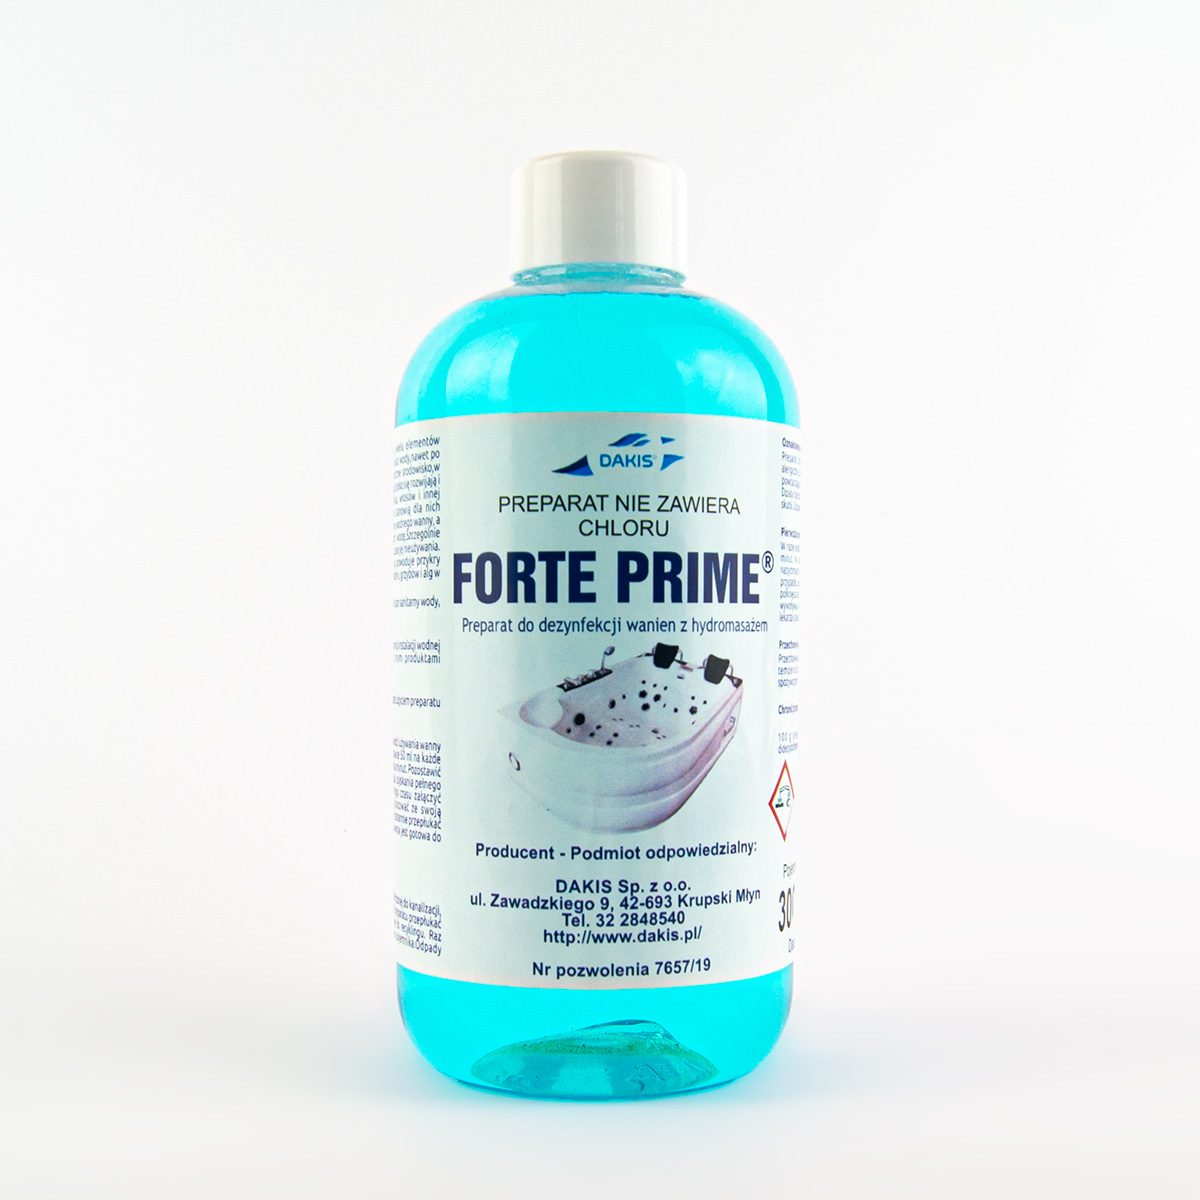 FORTE PRIME - Preparat do dezynfekcji wanien z hydromasażem - opakowanie 300 ml